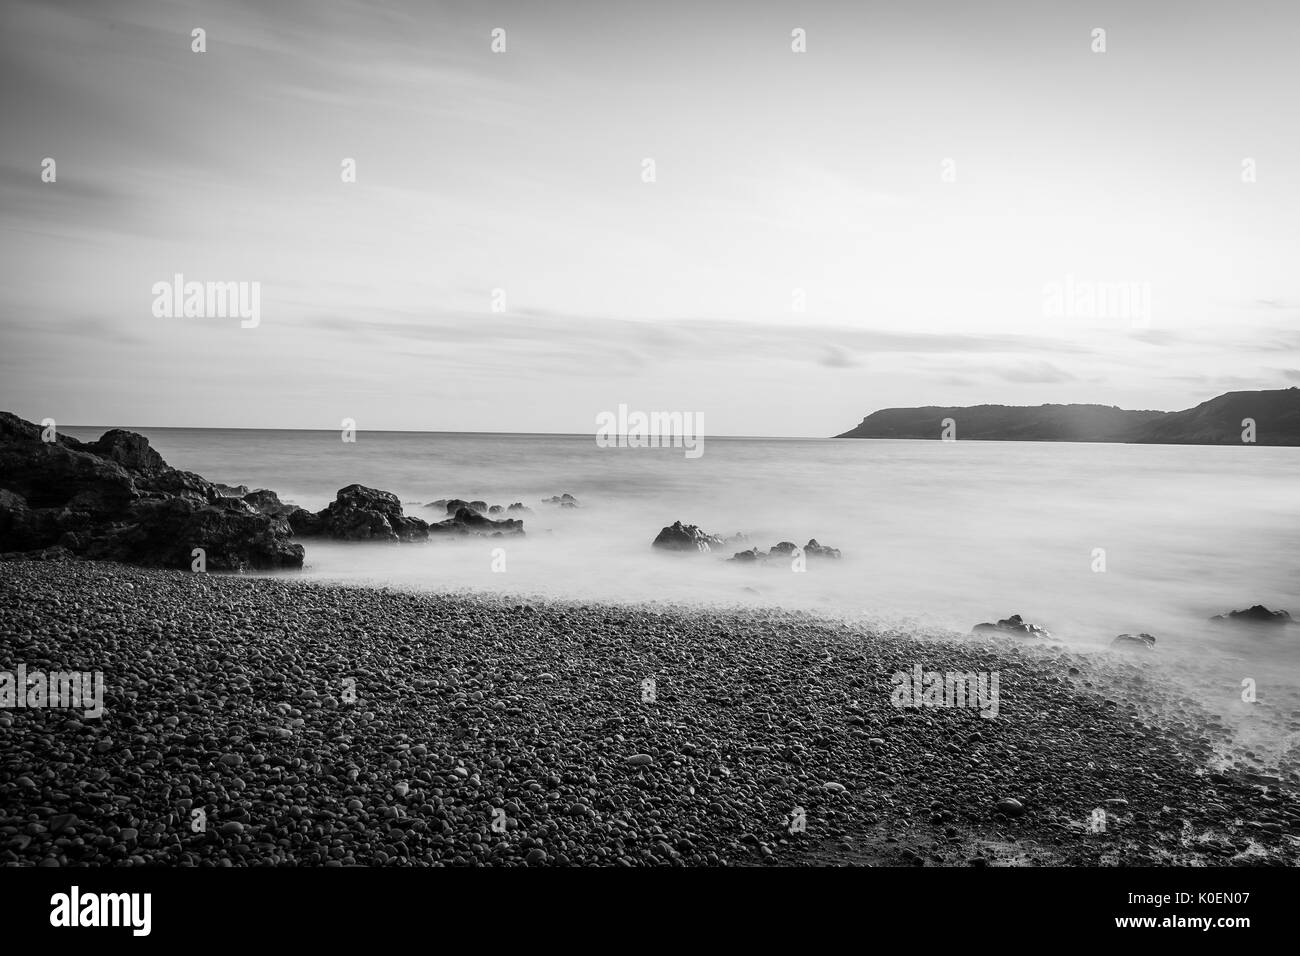 Eine Küsten lange Belichtung Szene mit Meer, Sonne Sand und Felsen in Schwarz und Weiß, in der Nähe von Caswell Bay auf der Halbinsel Gower in Wales, Großbritannien Stockfoto